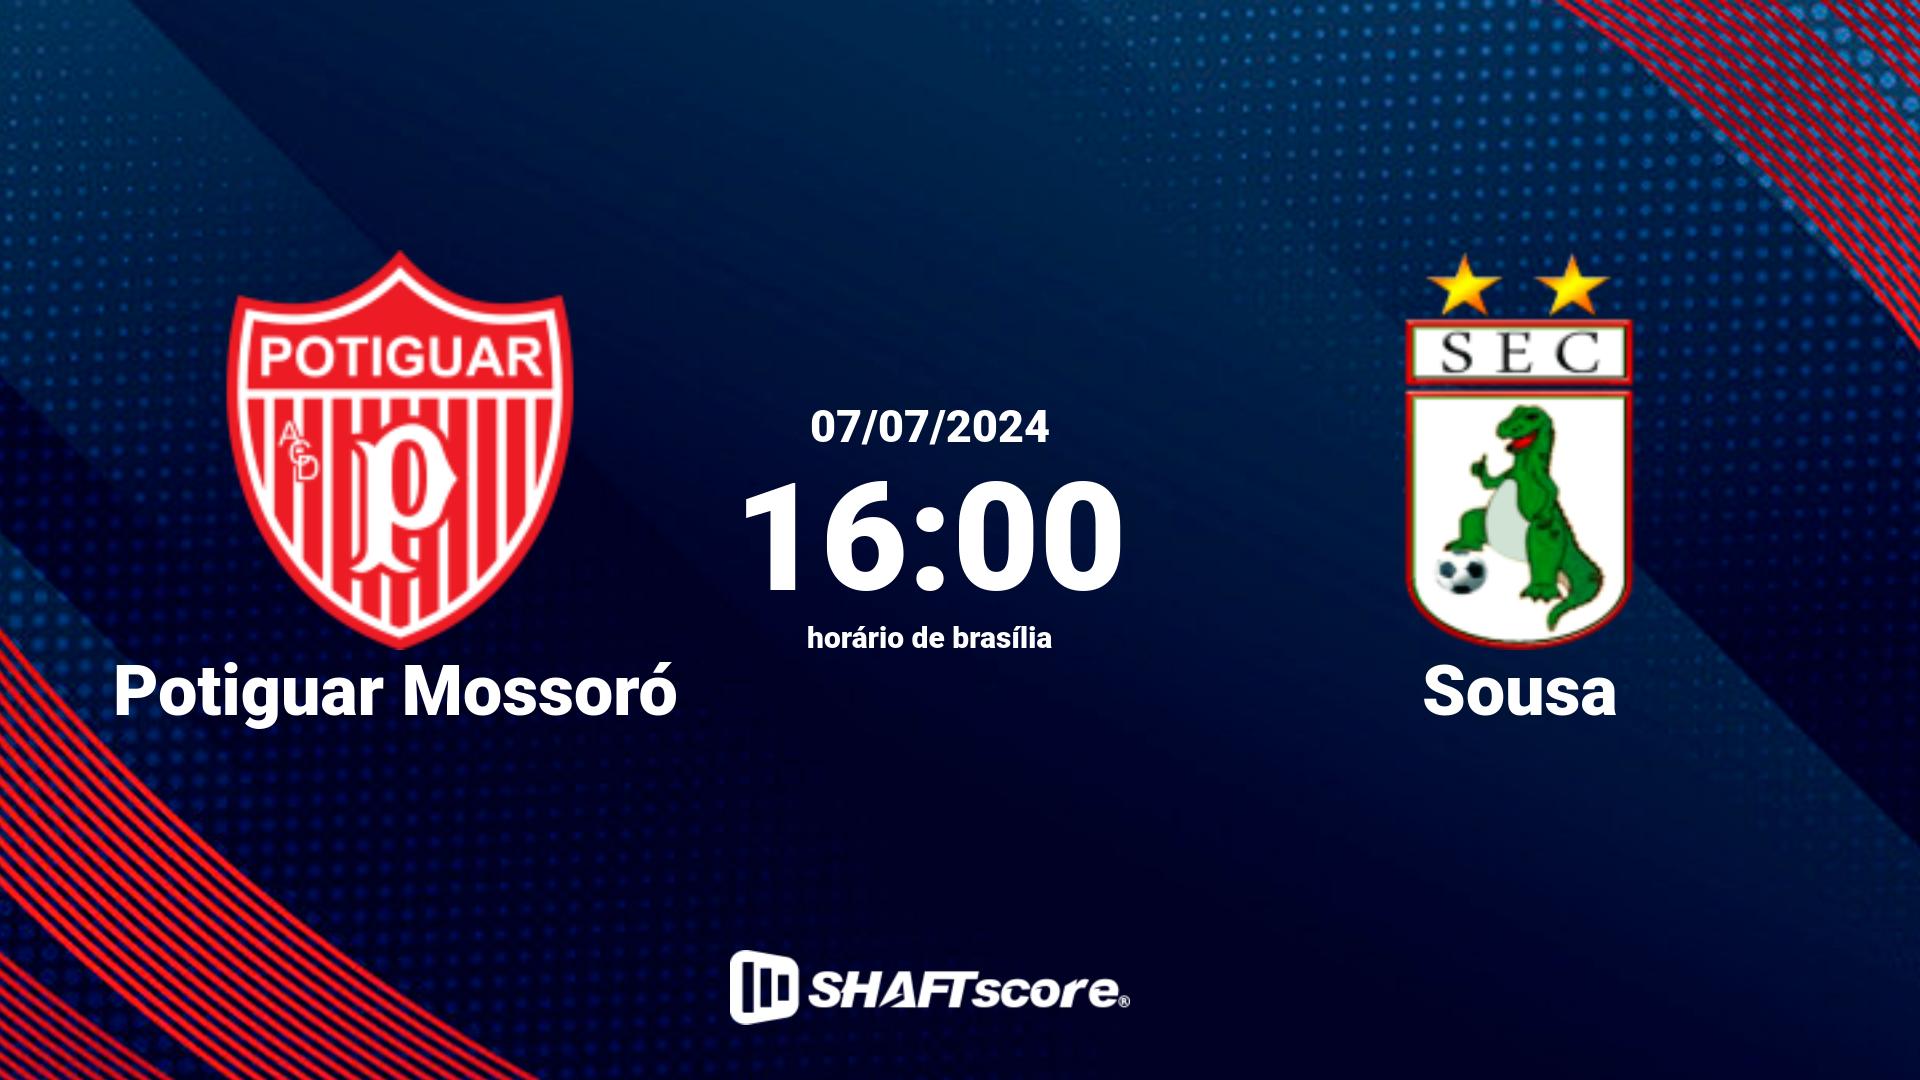 Estatísticas do jogo Potiguar Mossoró vs Sousa 07.07 16:00